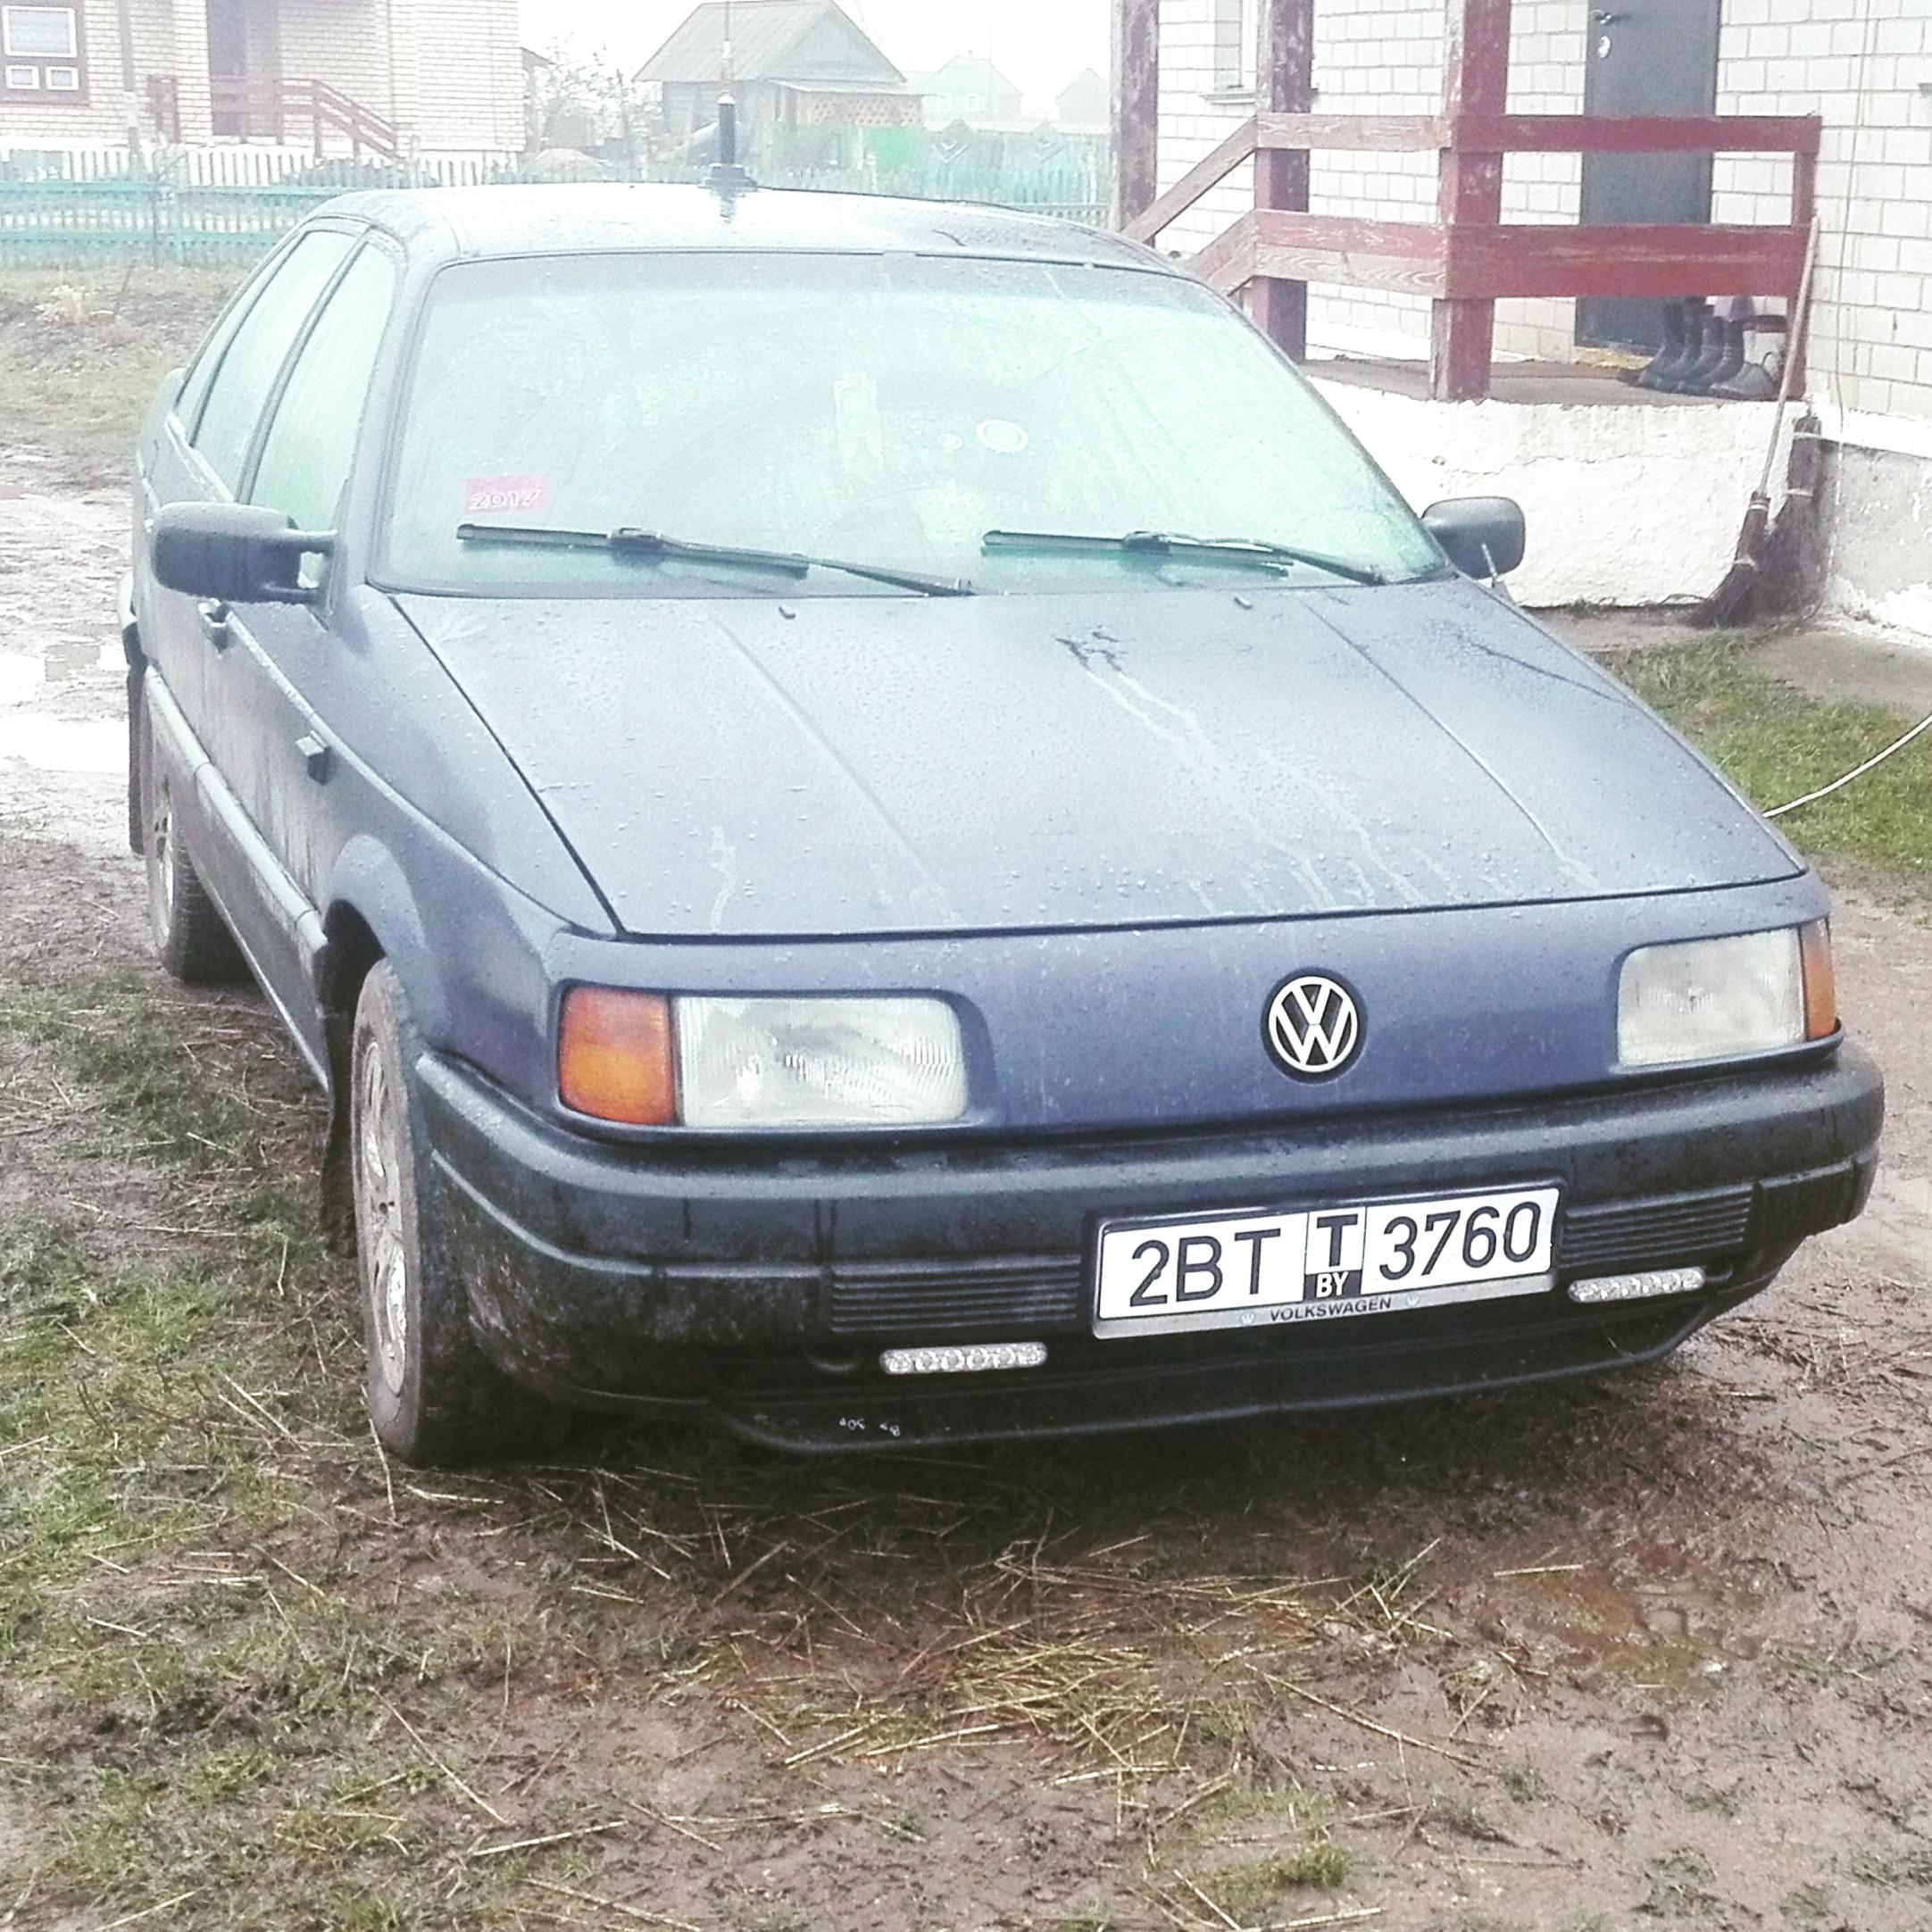 Автомобиль Фольксваген Пассат 1988г дизель